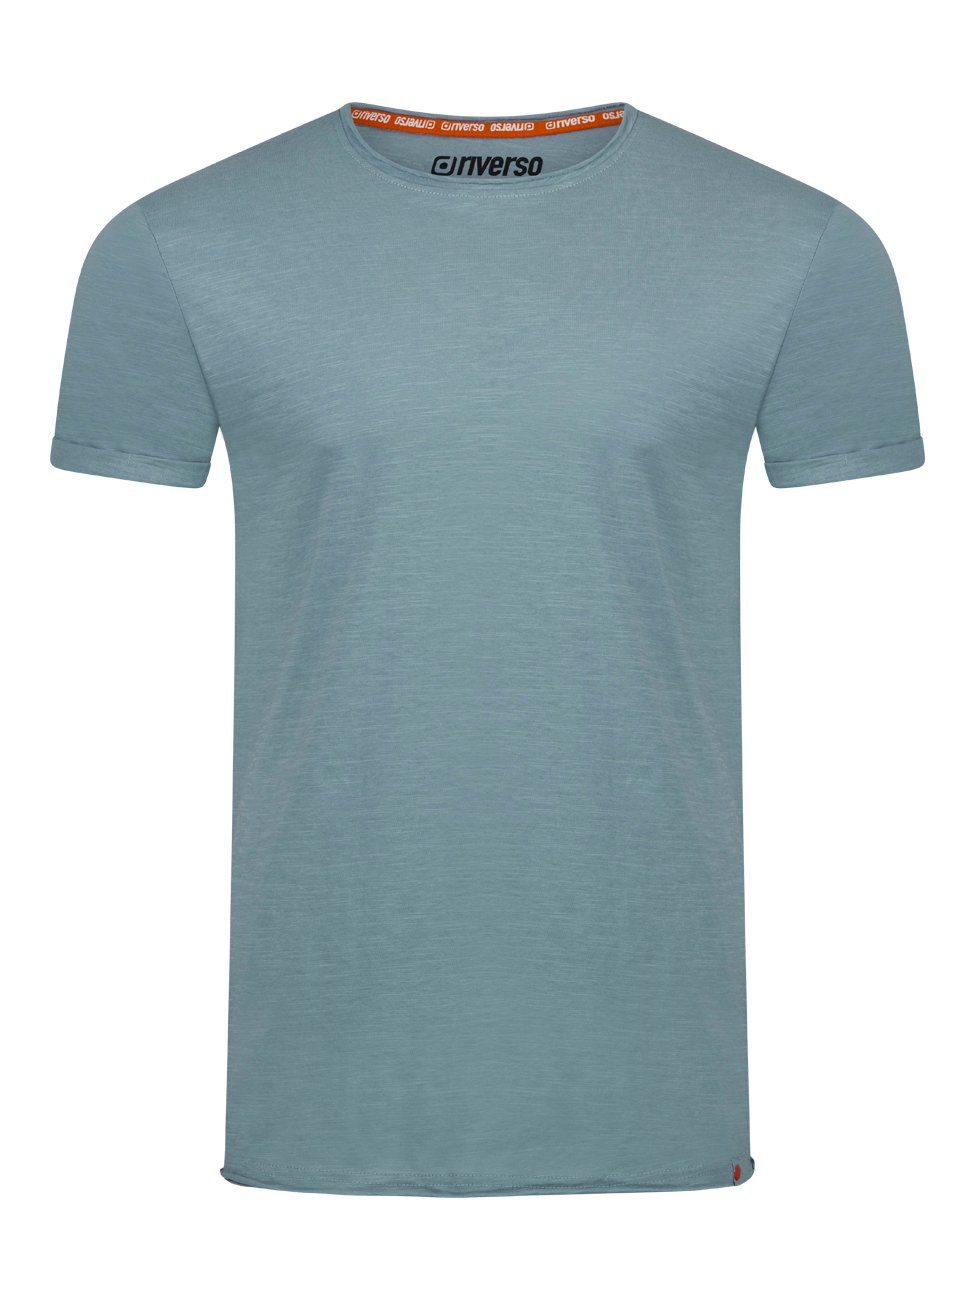 riverso T-Shirt Herren Fit Farbmix Baumwolle RIVLenny Kurzarm Rundhalsausschnitt aus 100% 2 Shirt Shirt Regular Basic mit Tee (3-tlg)